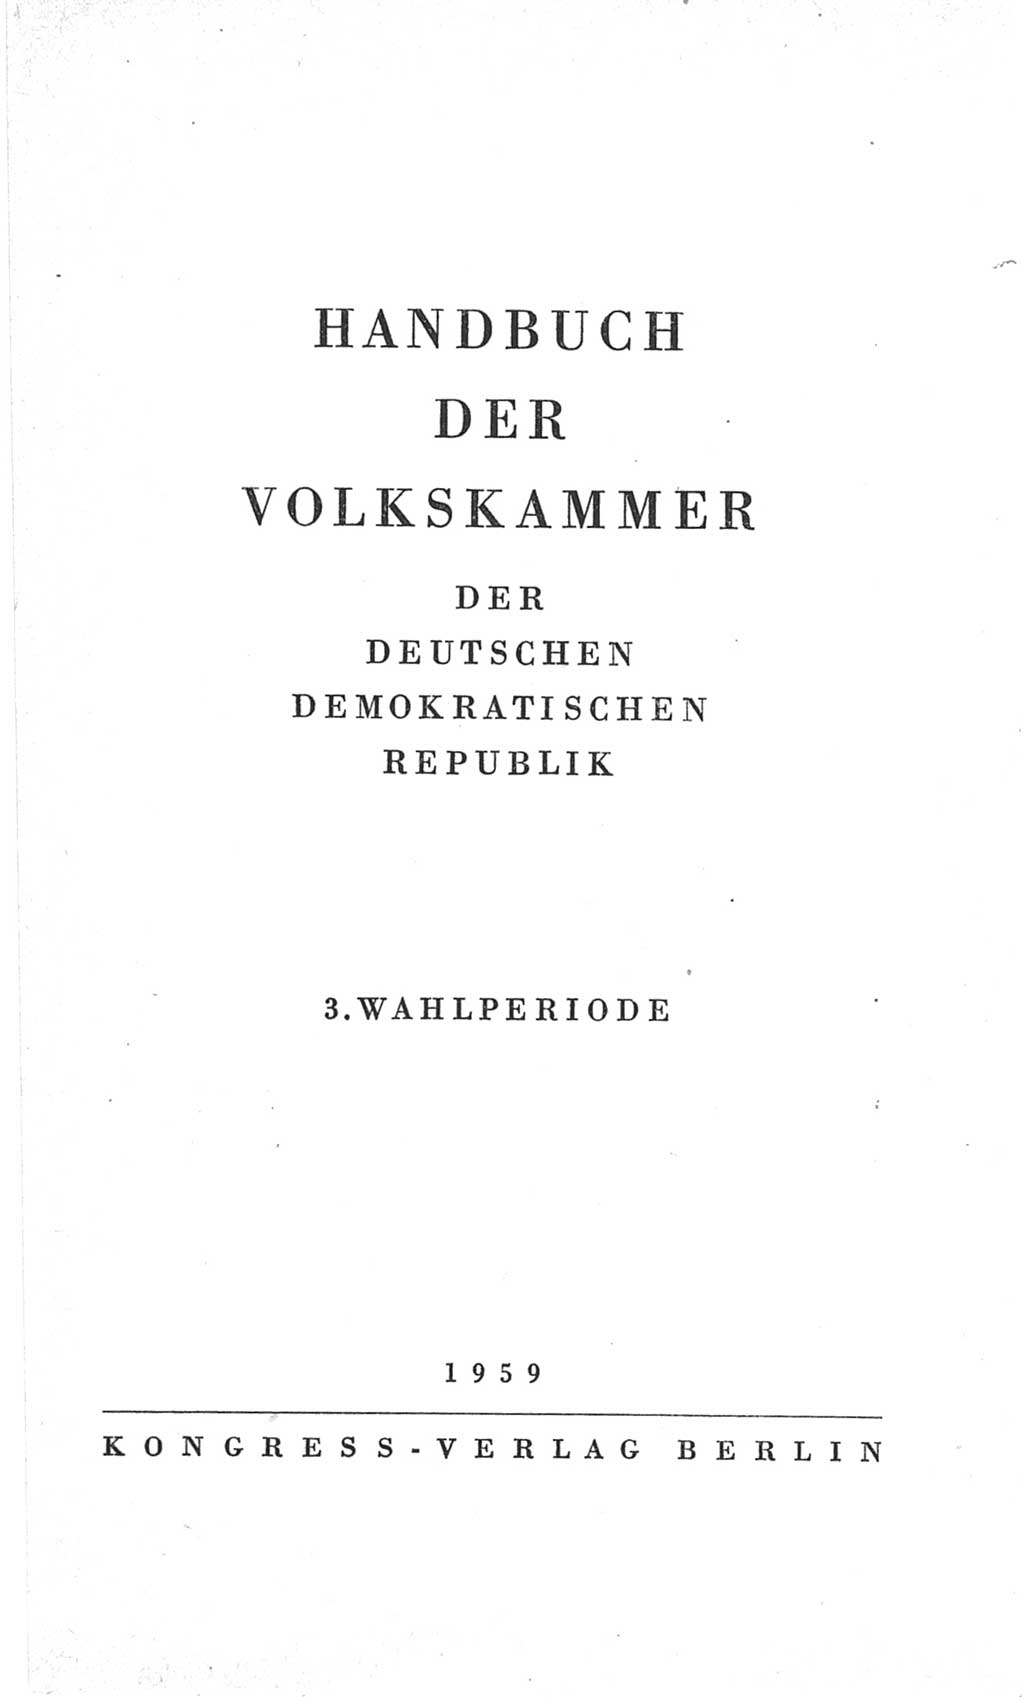 Handbuch der Volkskammer (VK) der Deutschen Demokratischen Republik (DDR), 3. Wahlperiode 1958-1963, Seite 3 (Hdb. VK. DDR 3. WP. 1958-1963, S. 3)